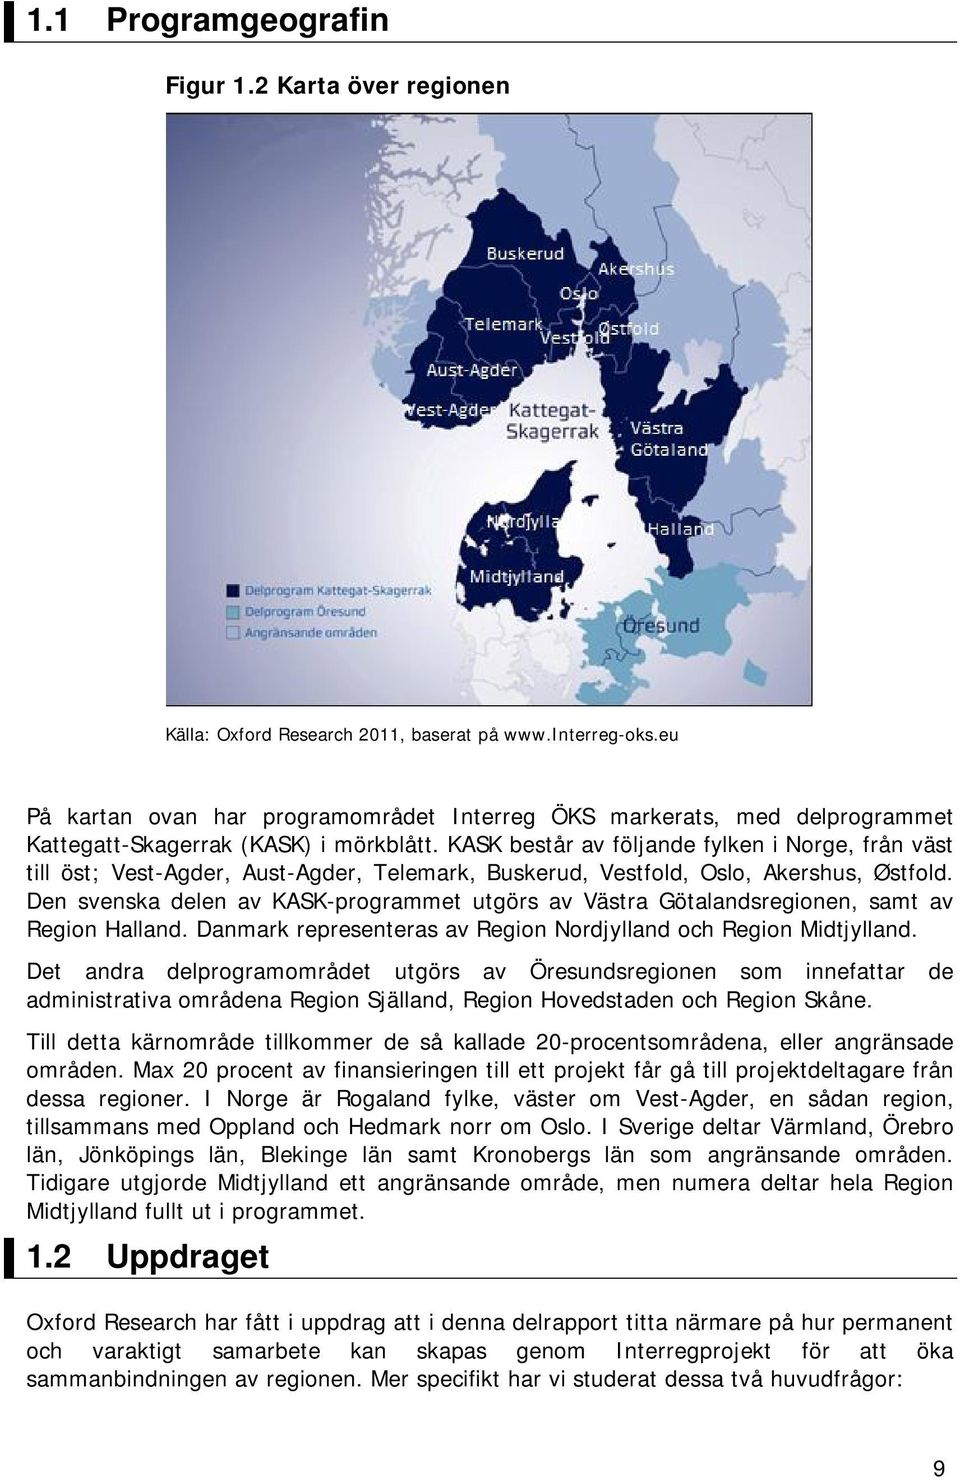 KASK består av följande fylken i Norge, från väst till öst; Vest-Agder, Aust-Agder, Telemark, Buskerud, Vestfold, Oslo, Akershus, Østfold.